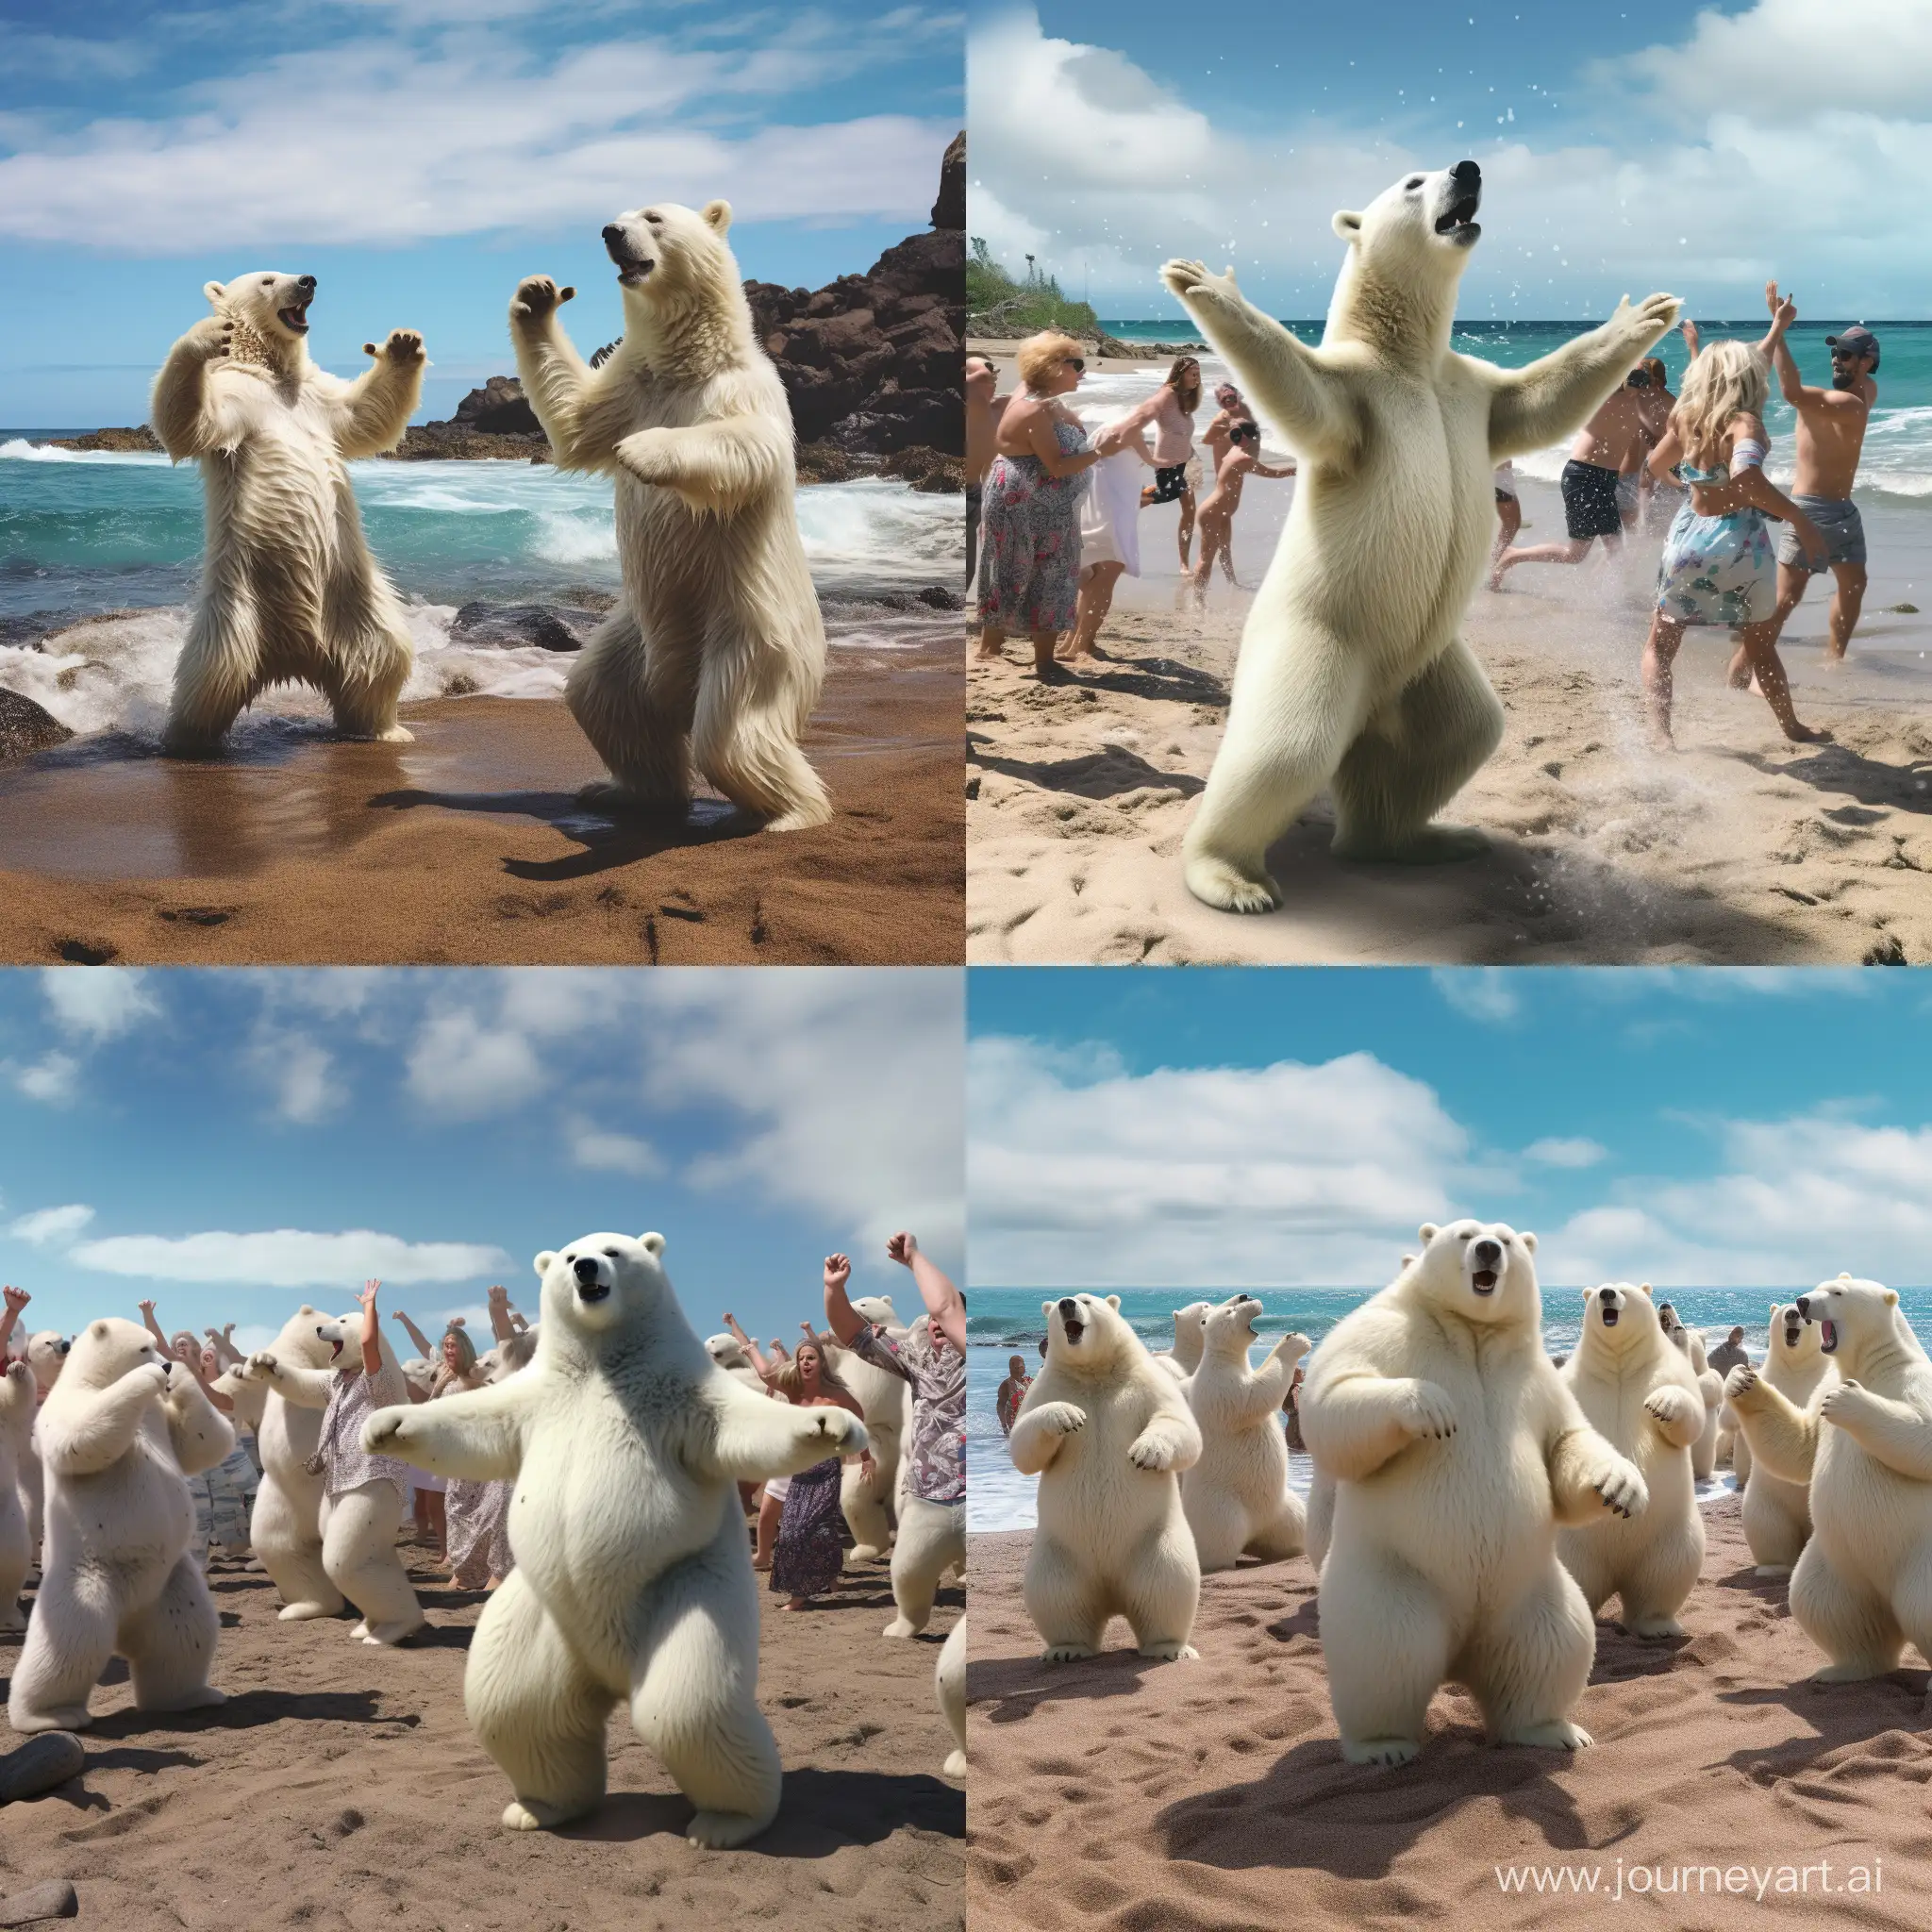 Joyful-Polar-Bears-Dancing-on-a-Hawaiian-Beach-Amidst-Applause